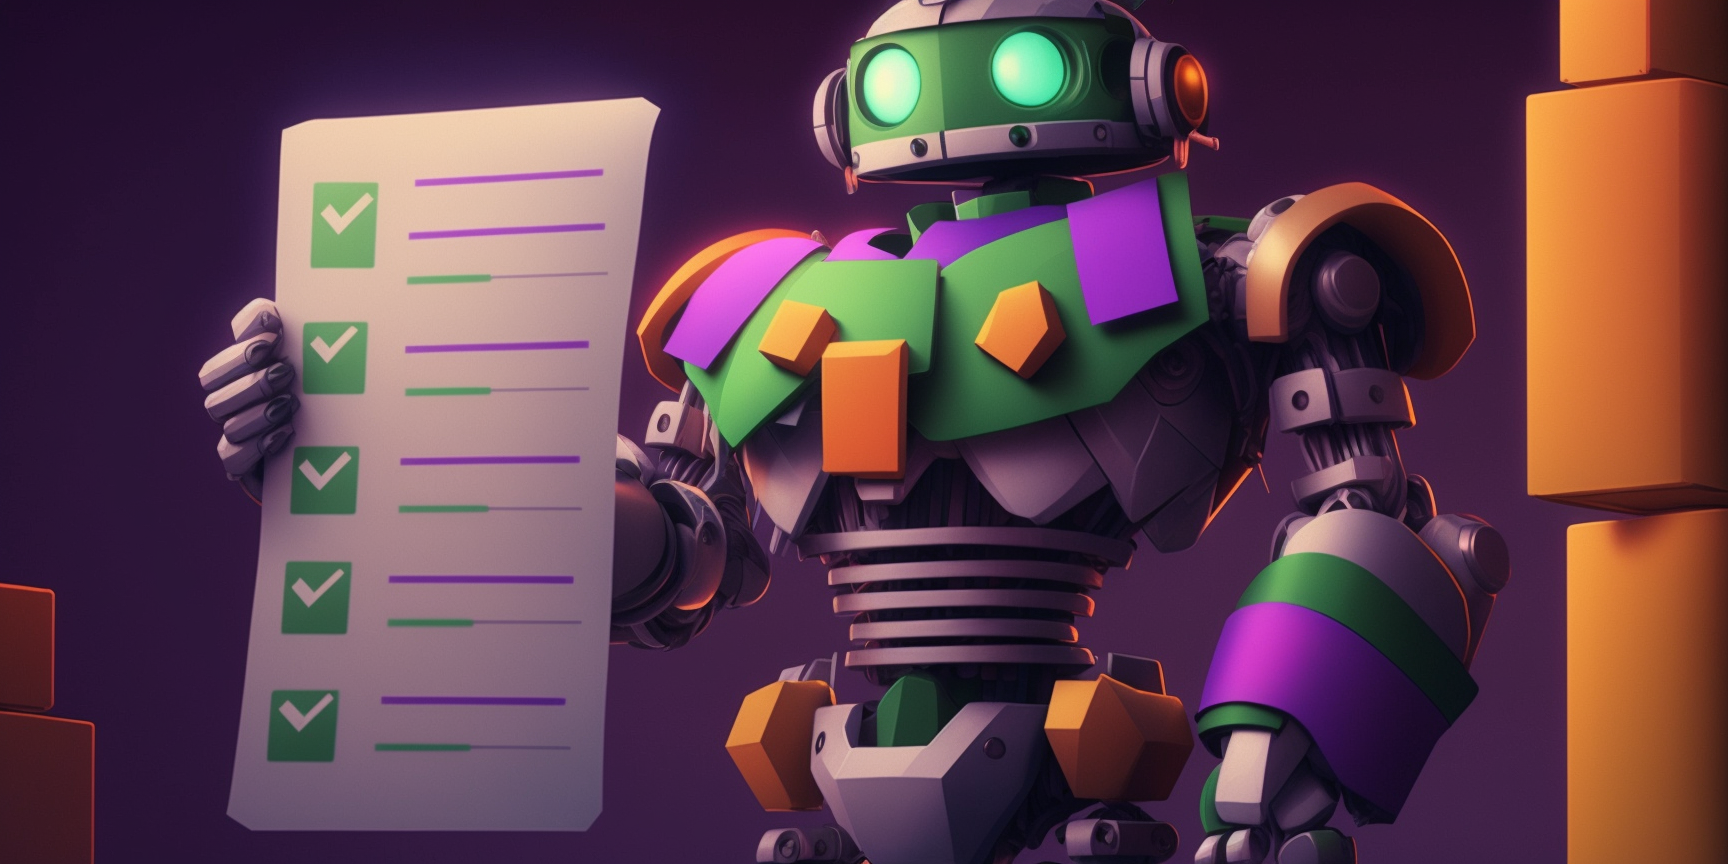 A robot holding a checklist.